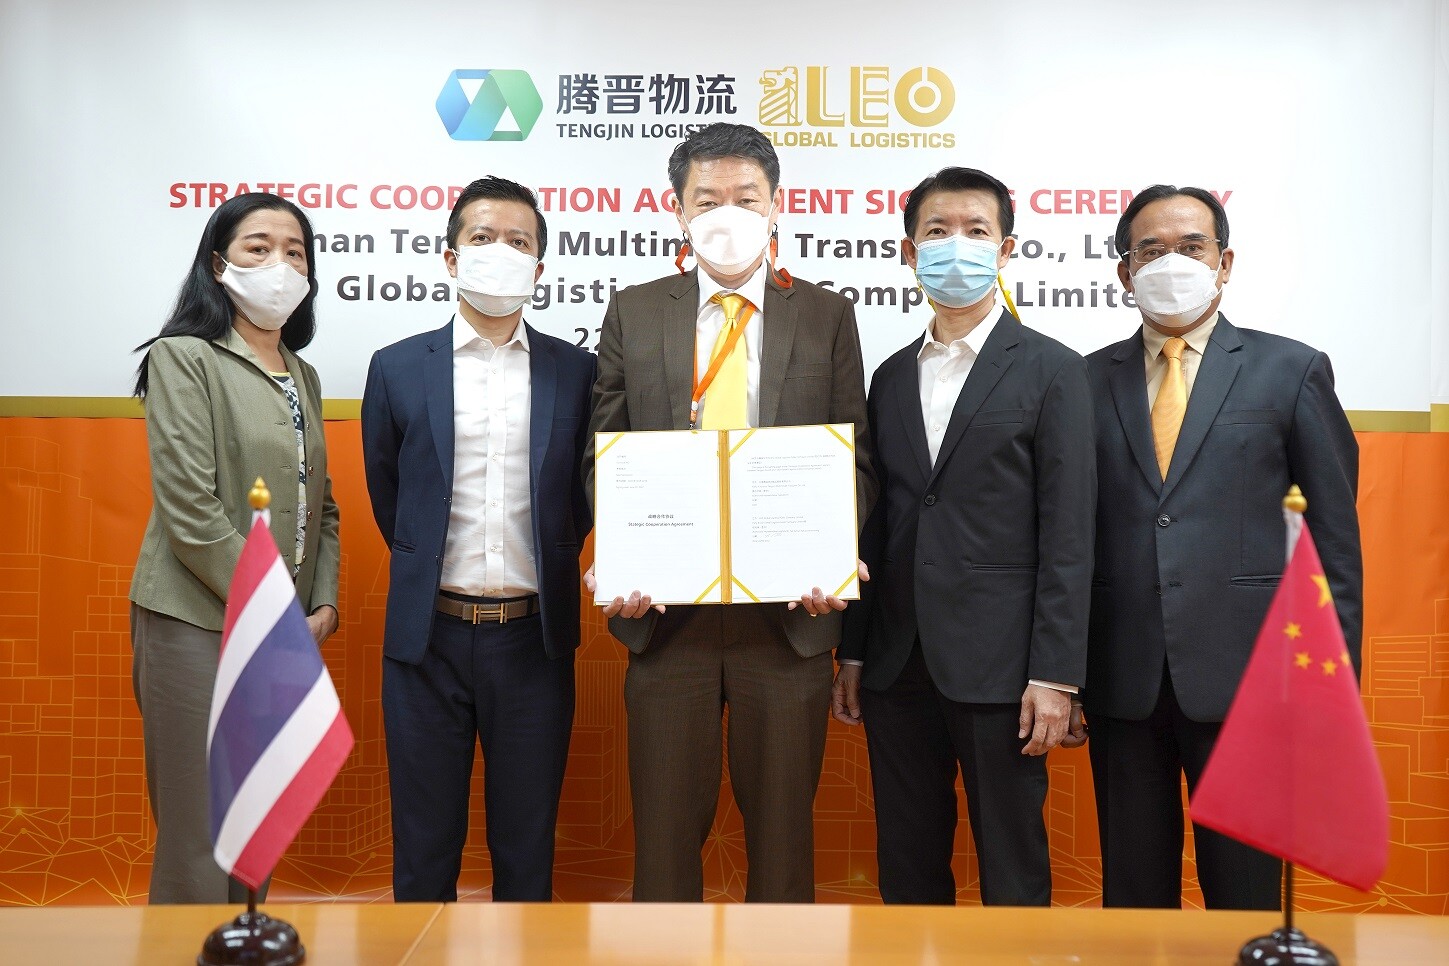 LEO เซ็นความร่วมมือเชิงกลยุทธ์กับ "Yunnan Tengjun" รัฐวิสาหกิจจีน พัฒนาระบบบริการรถไฟขนส่งผลไม้และสินค้าอีคอมเมิร์ซไทย-จีน